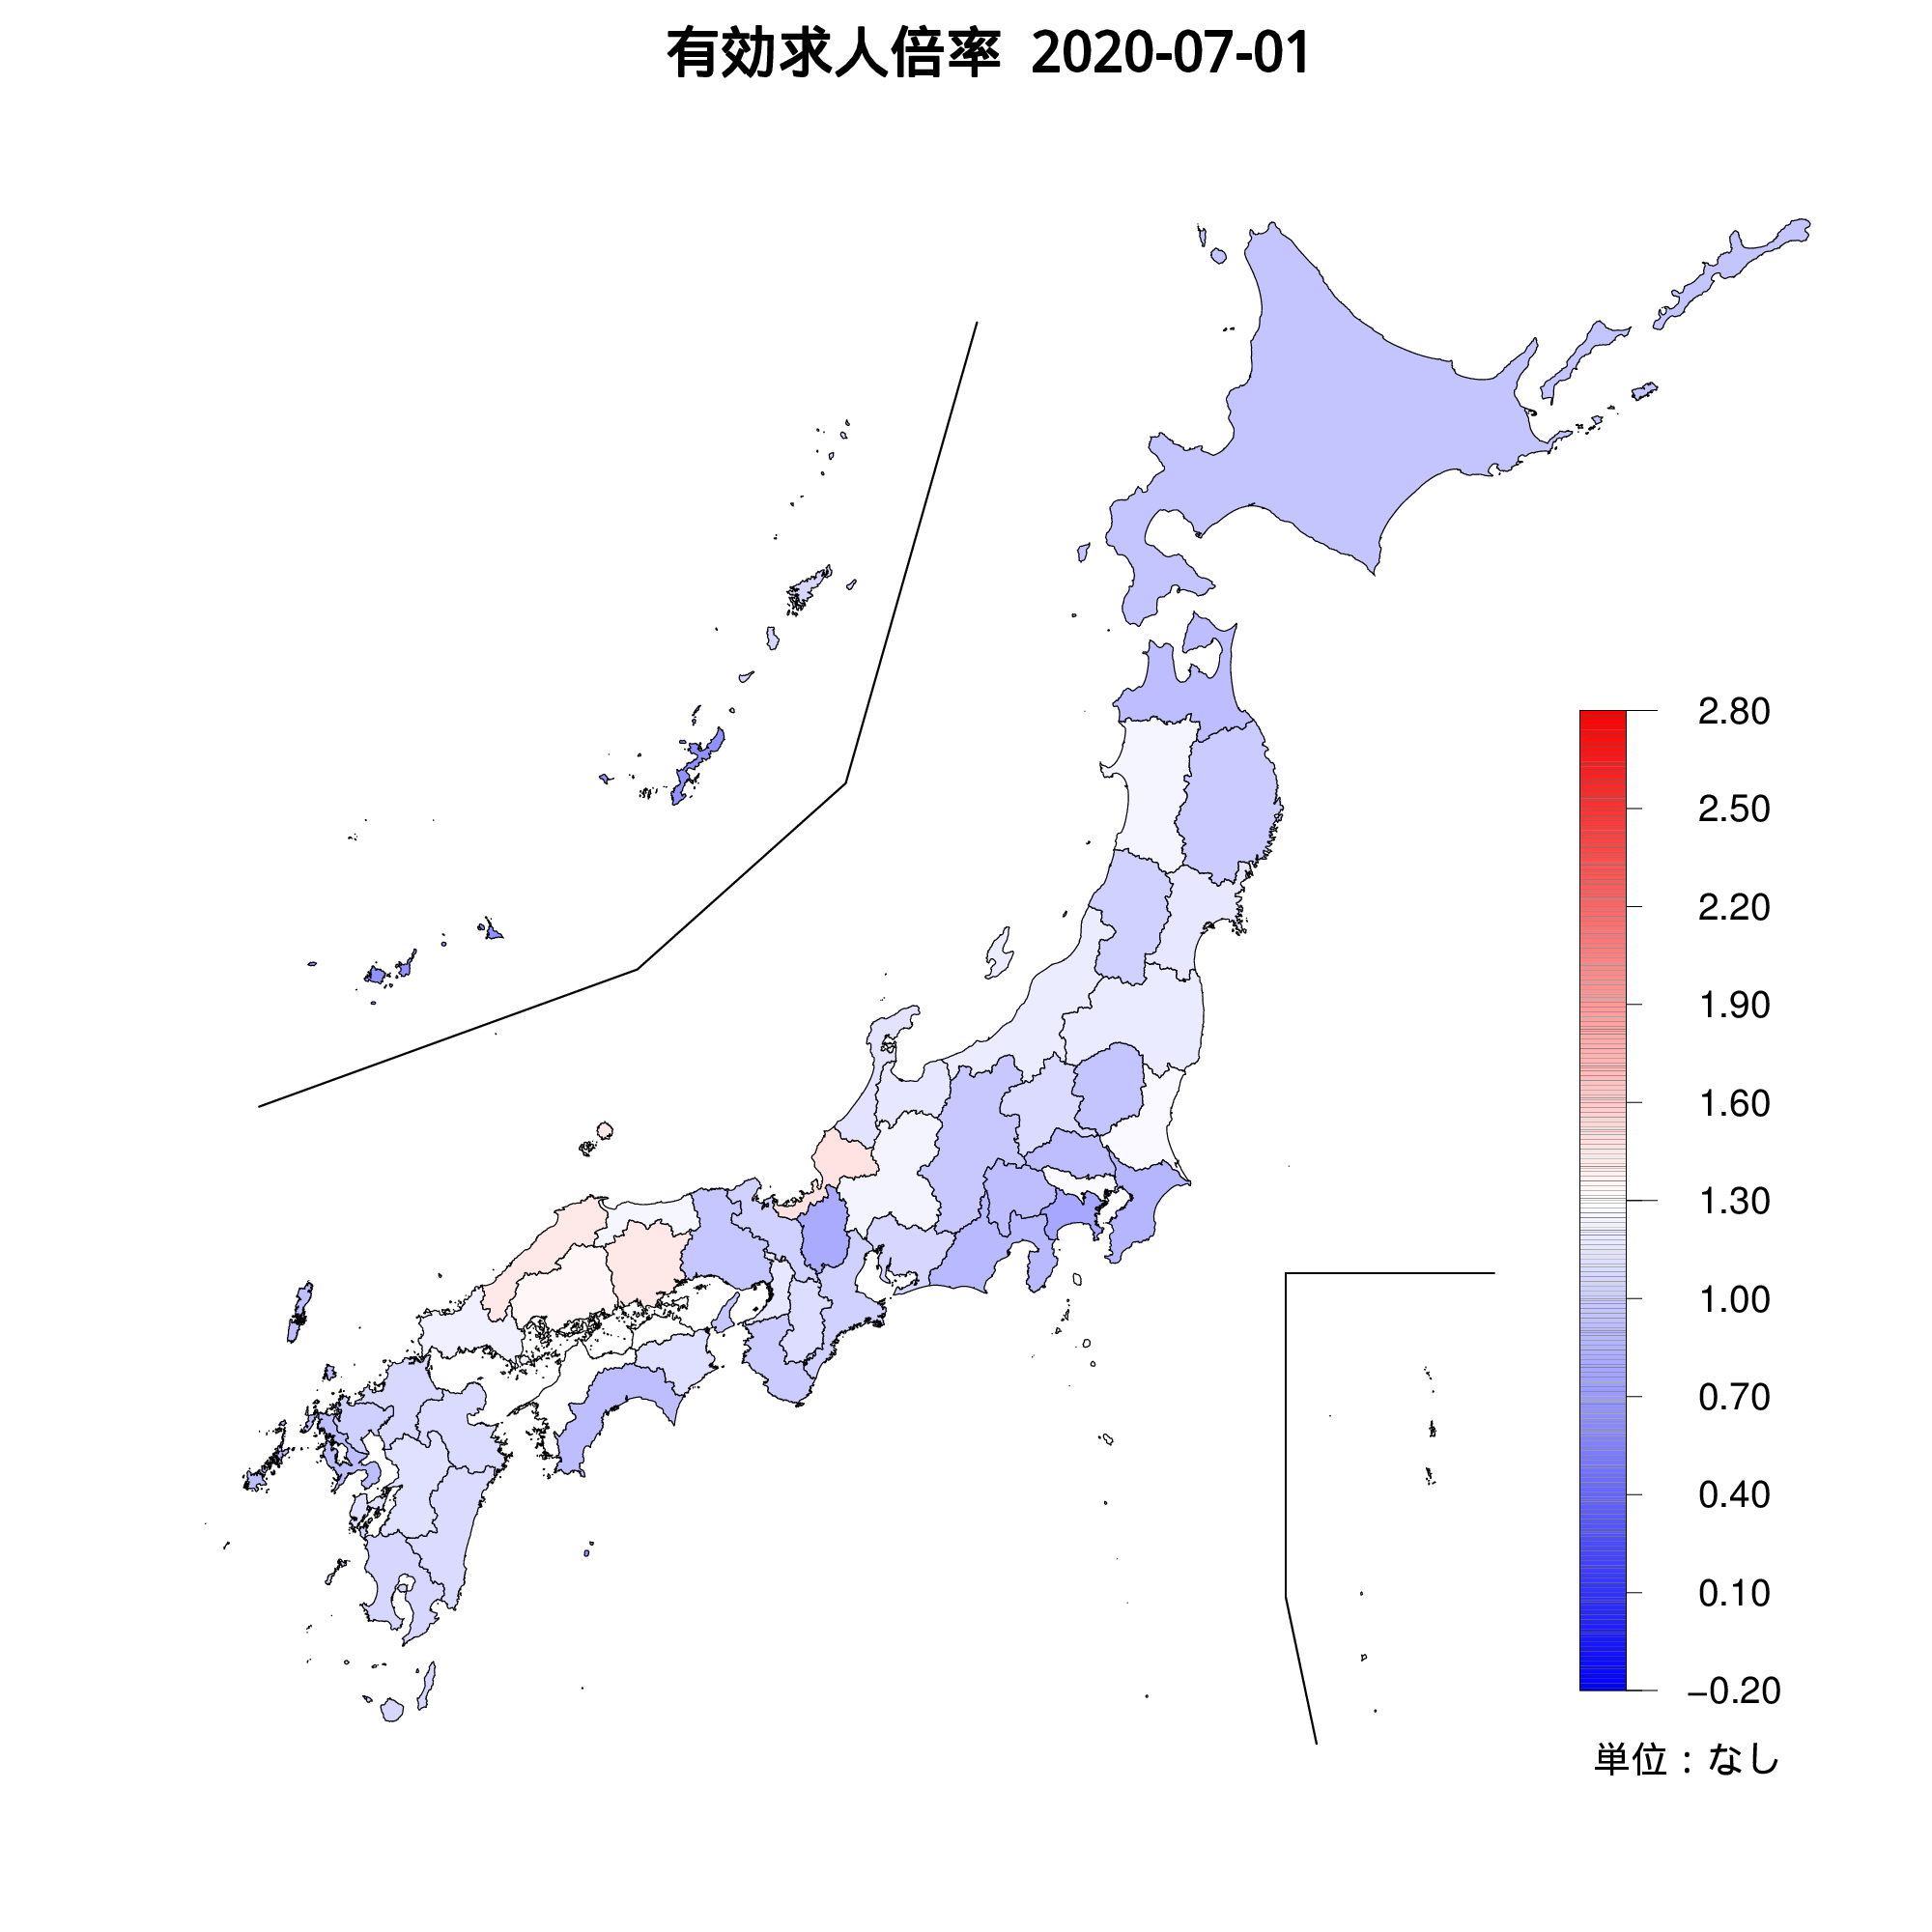 各都道府県の有効求人倍率を示す地図（2020年07月）